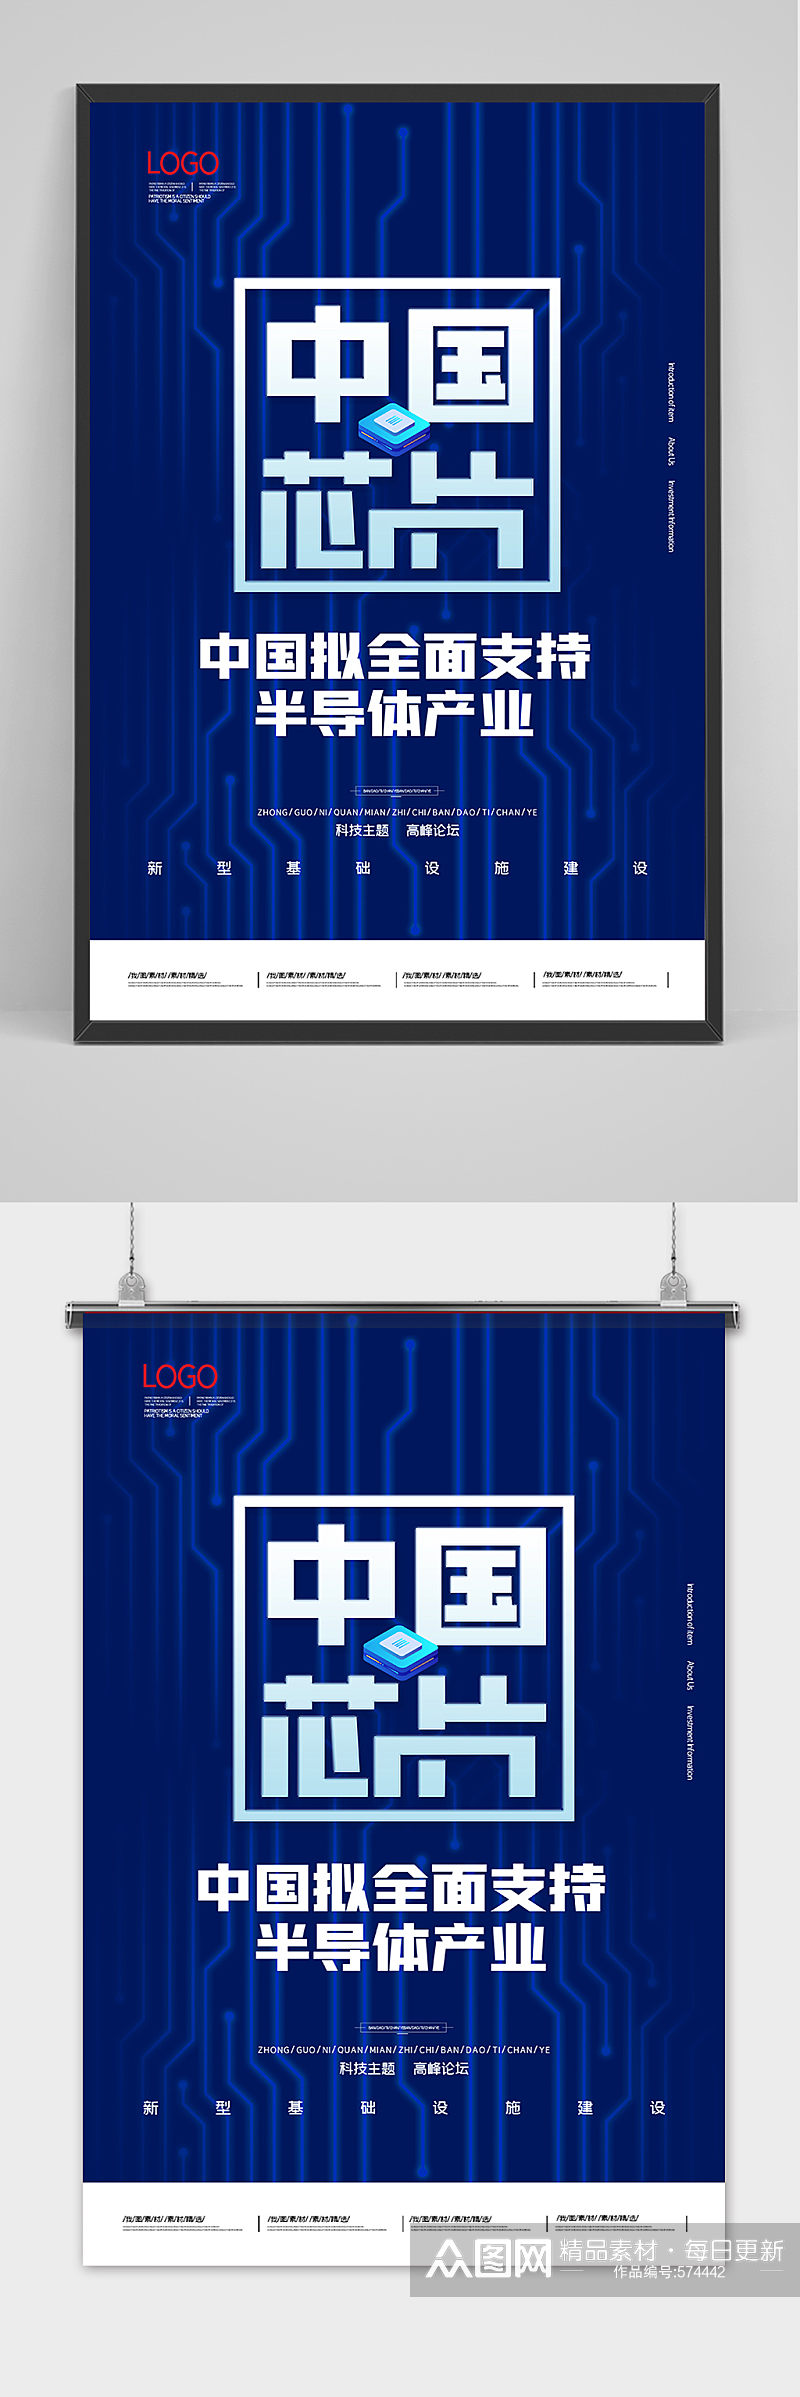 2020简约中国芯片半导体海报素材